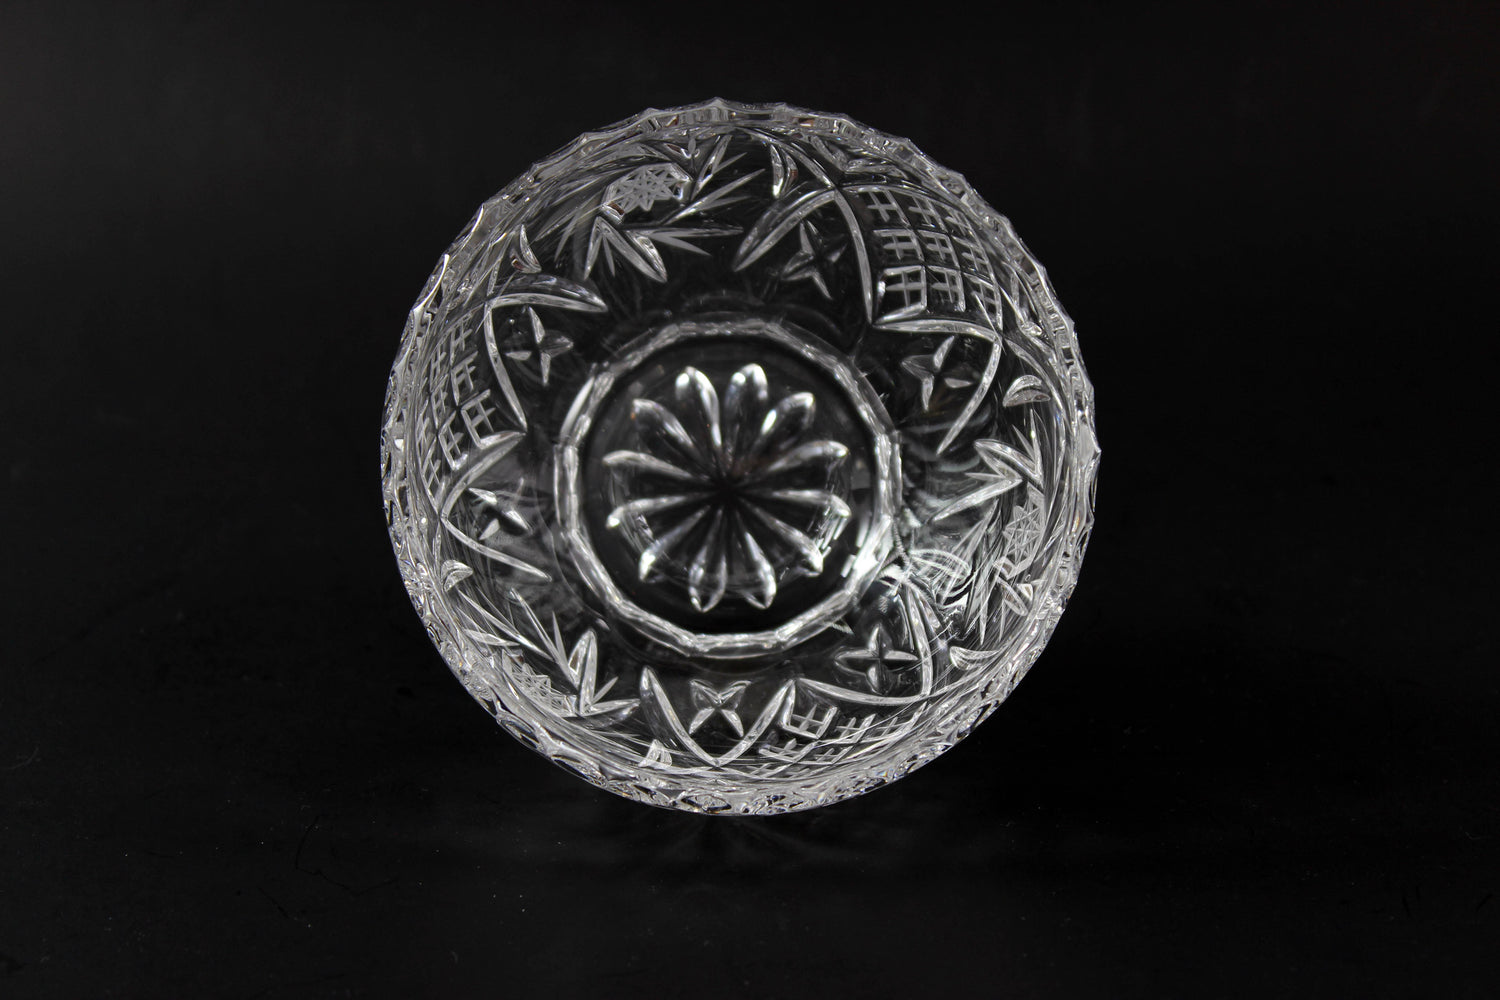 Pinwheel Crystal Small Bowl with Base